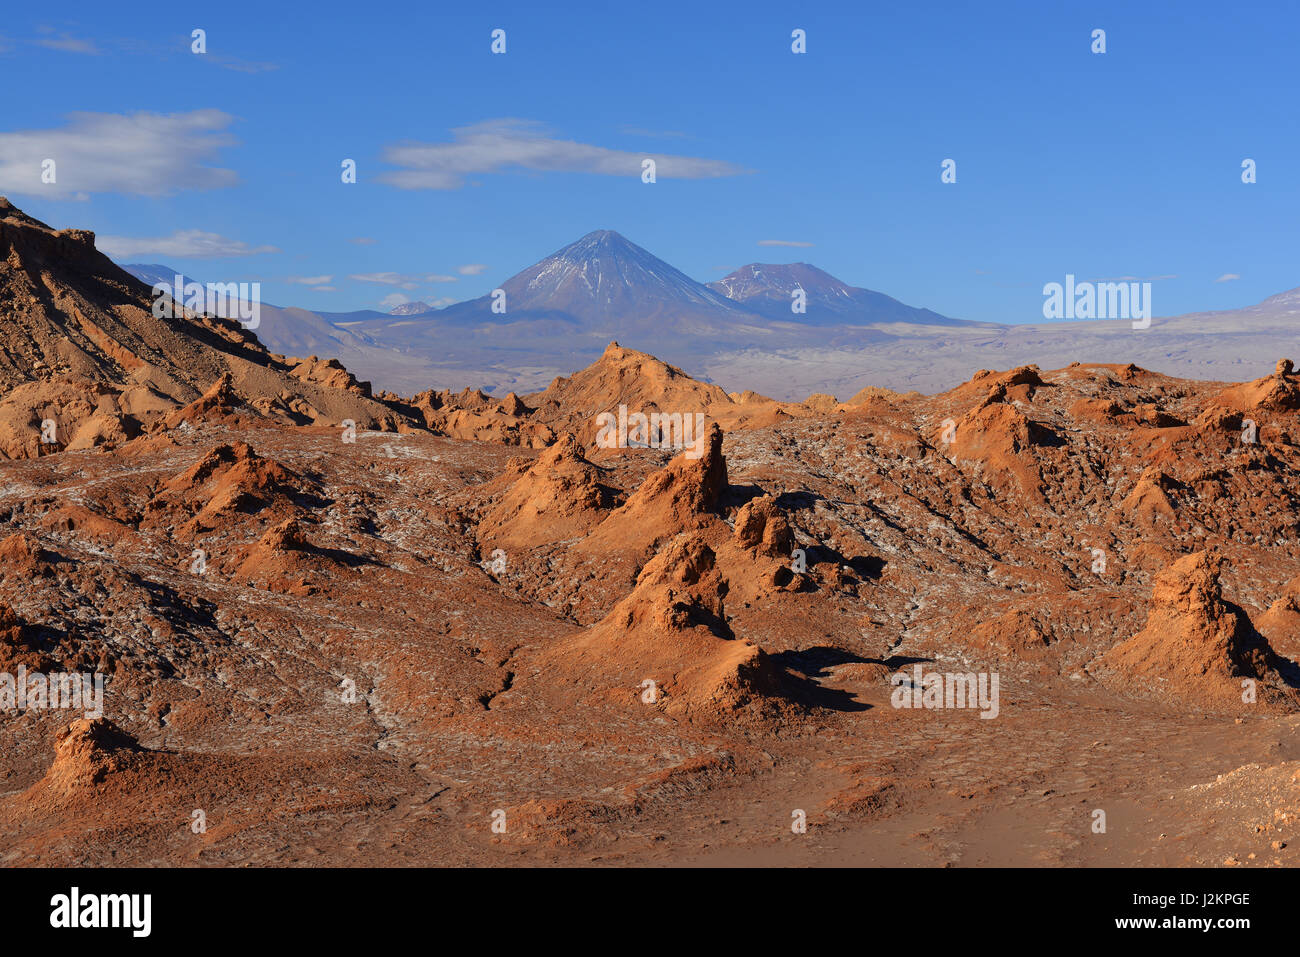 Paysage désertique de la vallée de la Lune du désert d'Atacama, près de San Pedro de Atacama avec une vue sur le volcan Licancabur, au nord du Chili. Banque D'Images